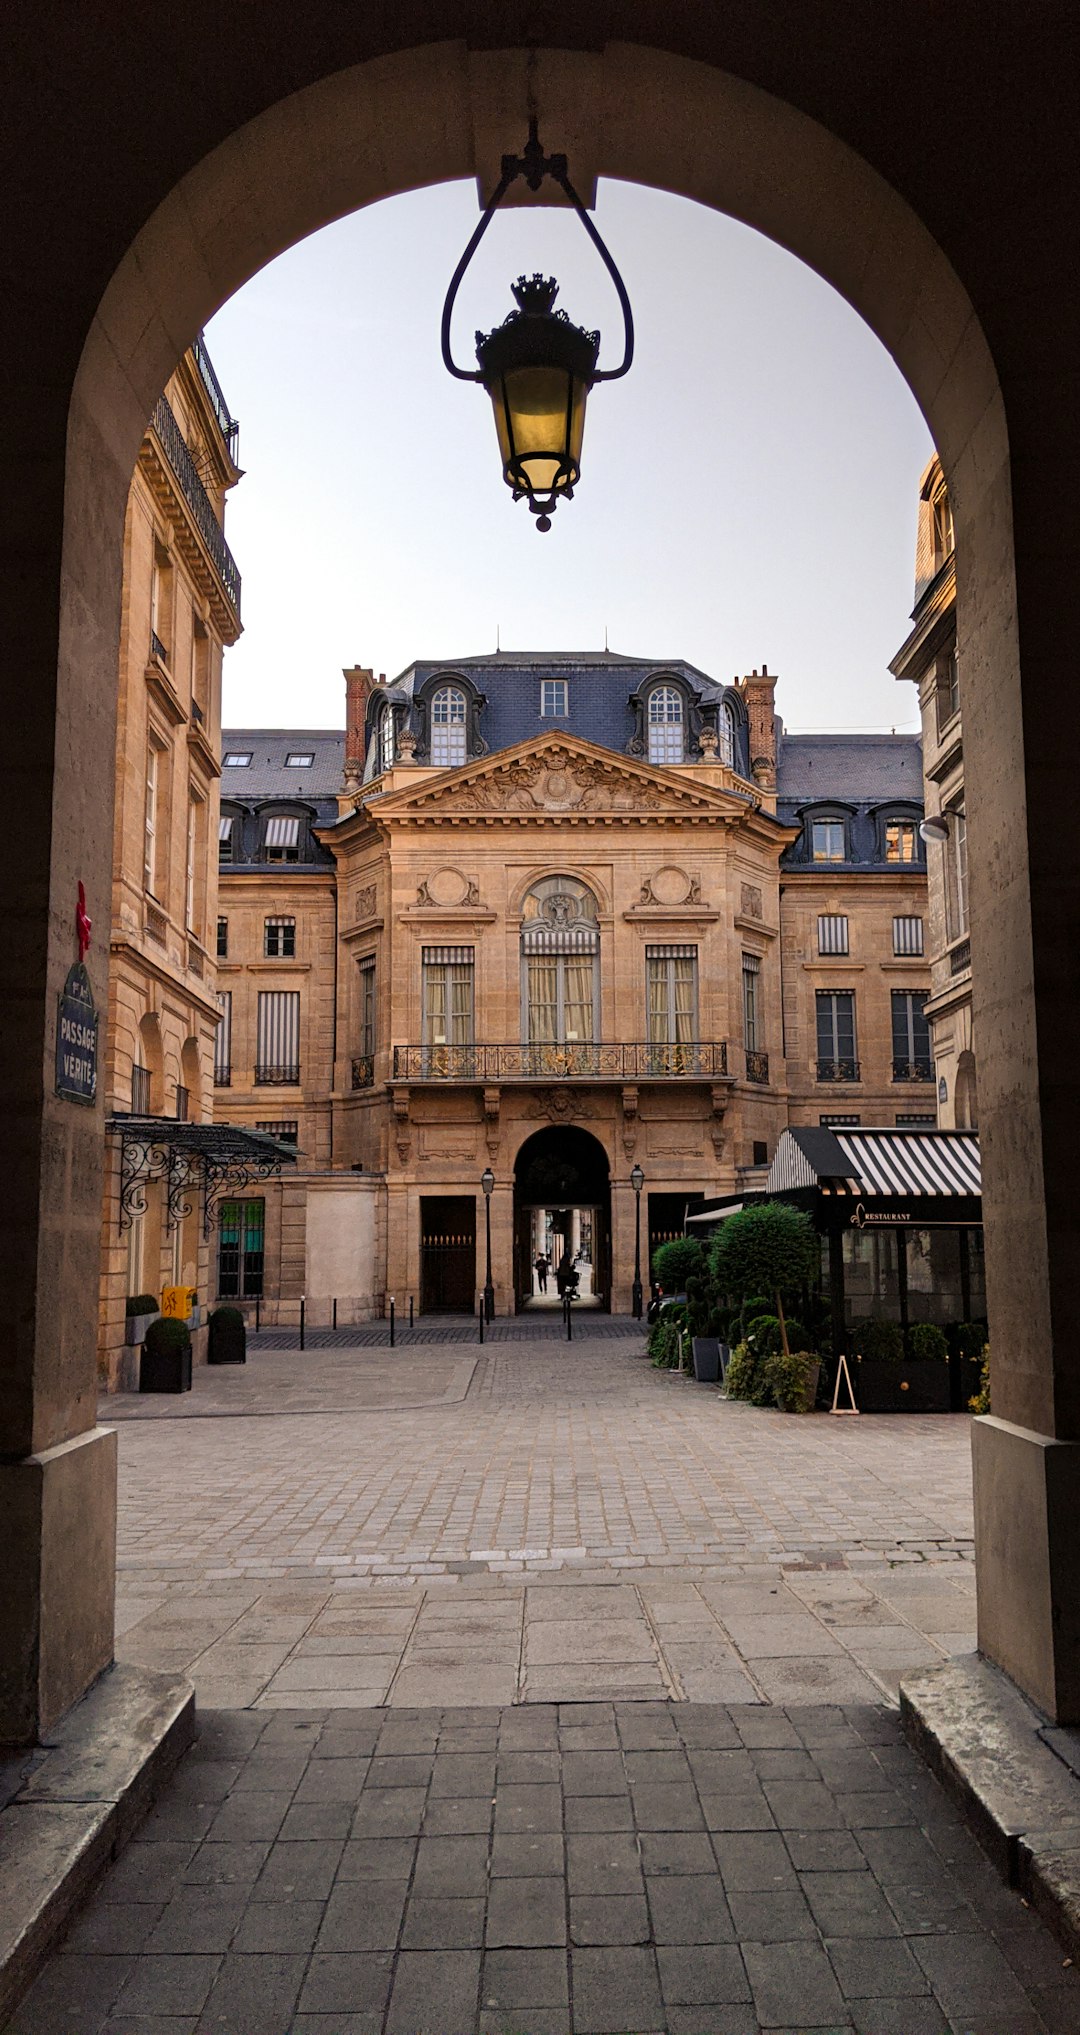 Town photo spot 1 Galerie des Proues Sacré-Cœur Basilica